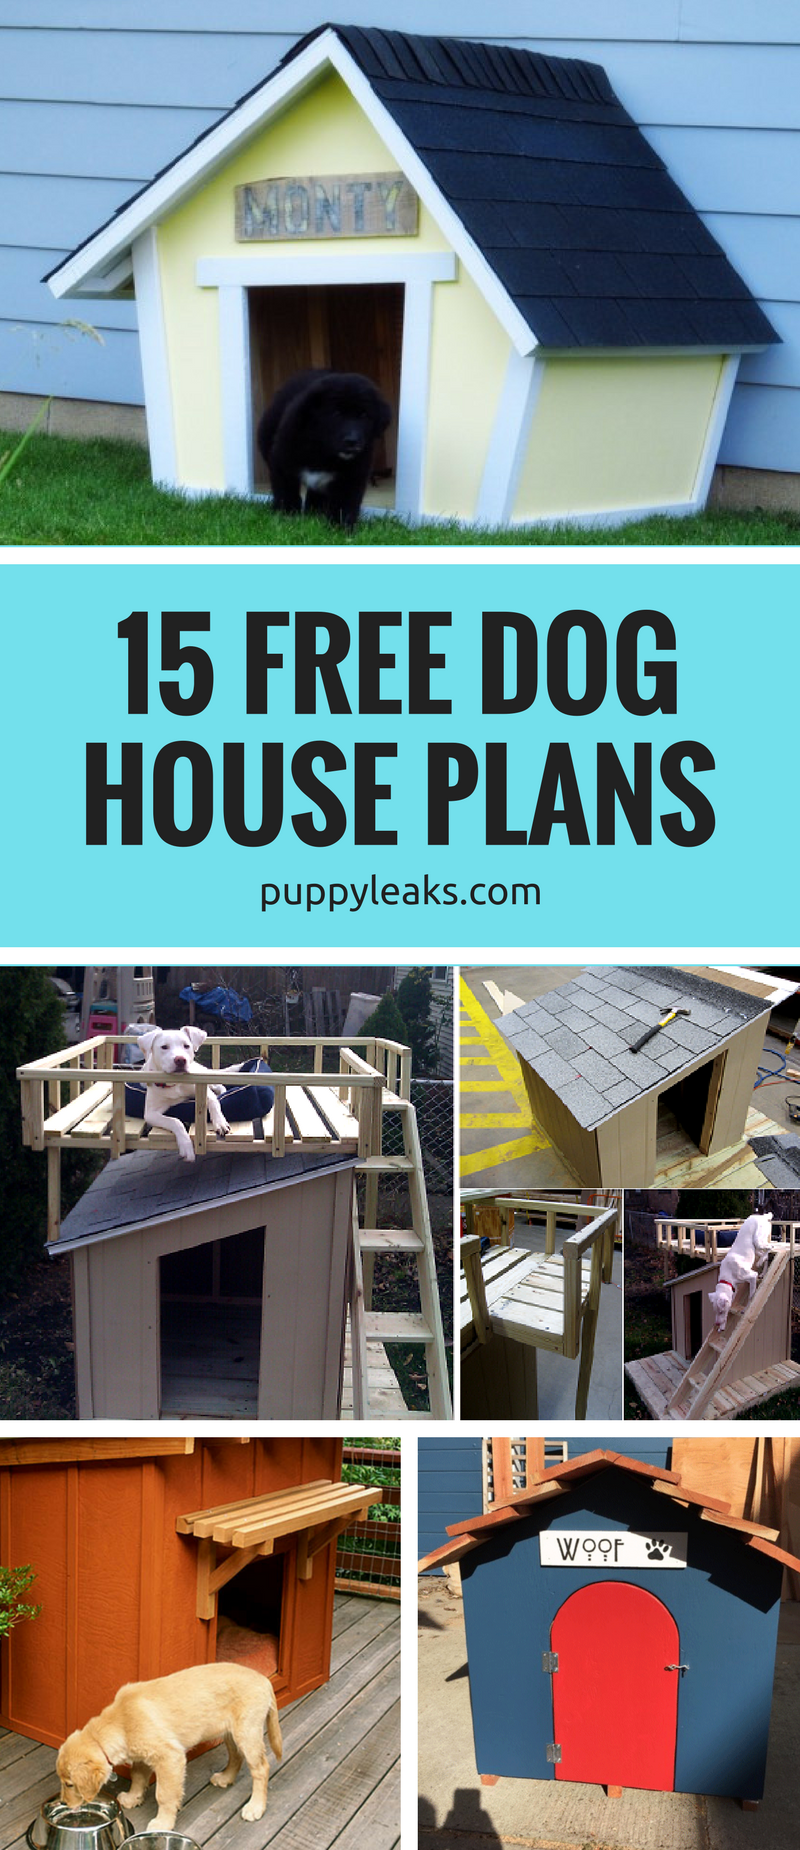 15 bezplatných plánů psího domu